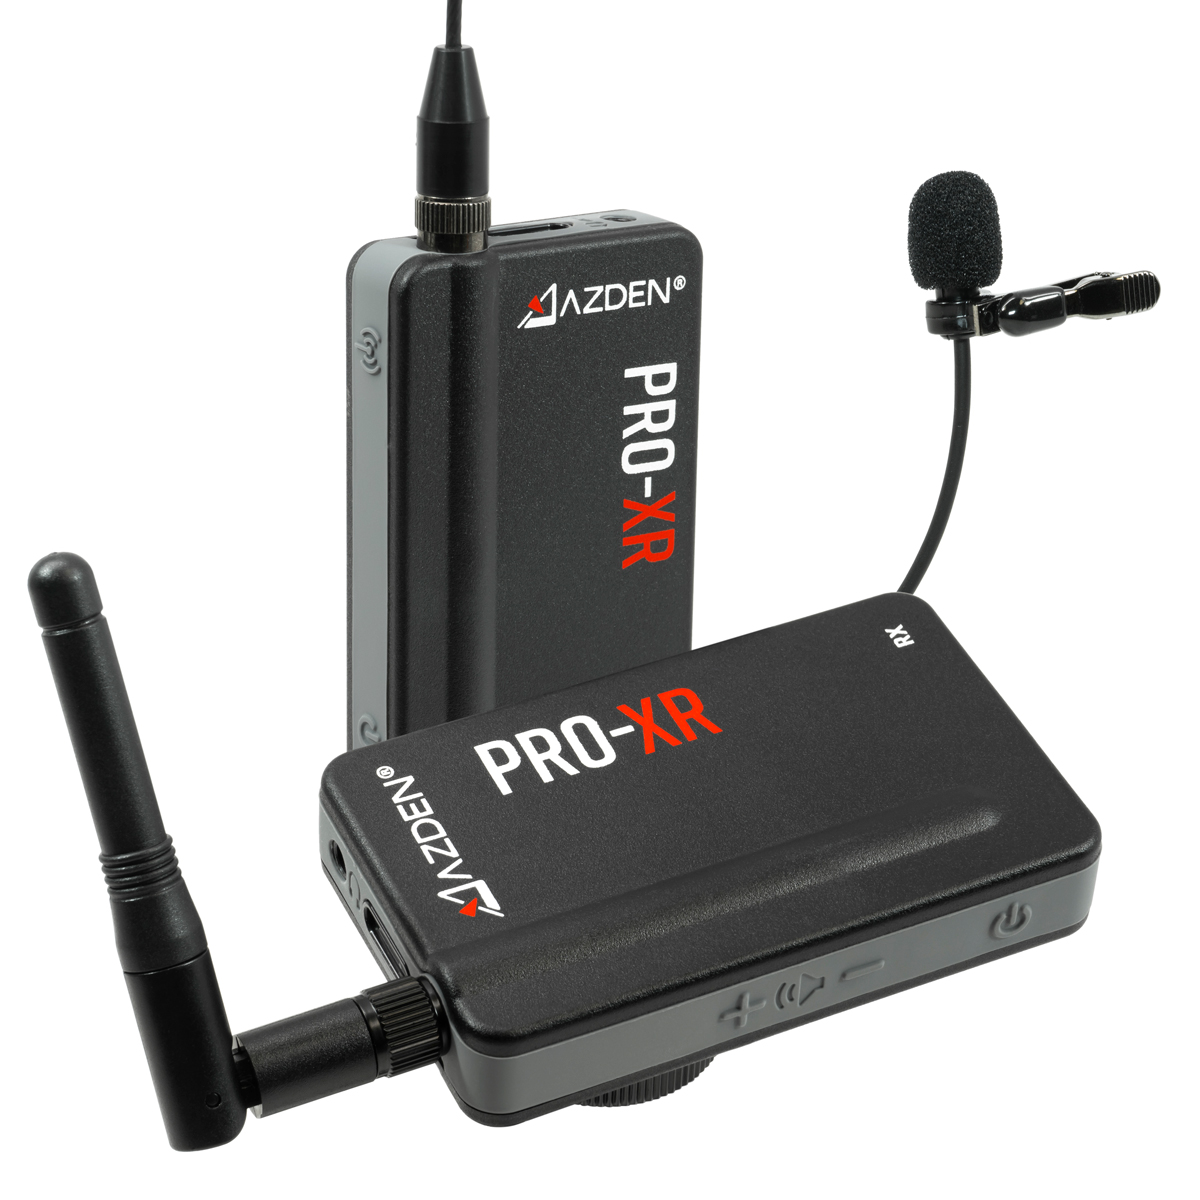 PRO-XR 2.4 GHz Wireless Microphone System - Azden